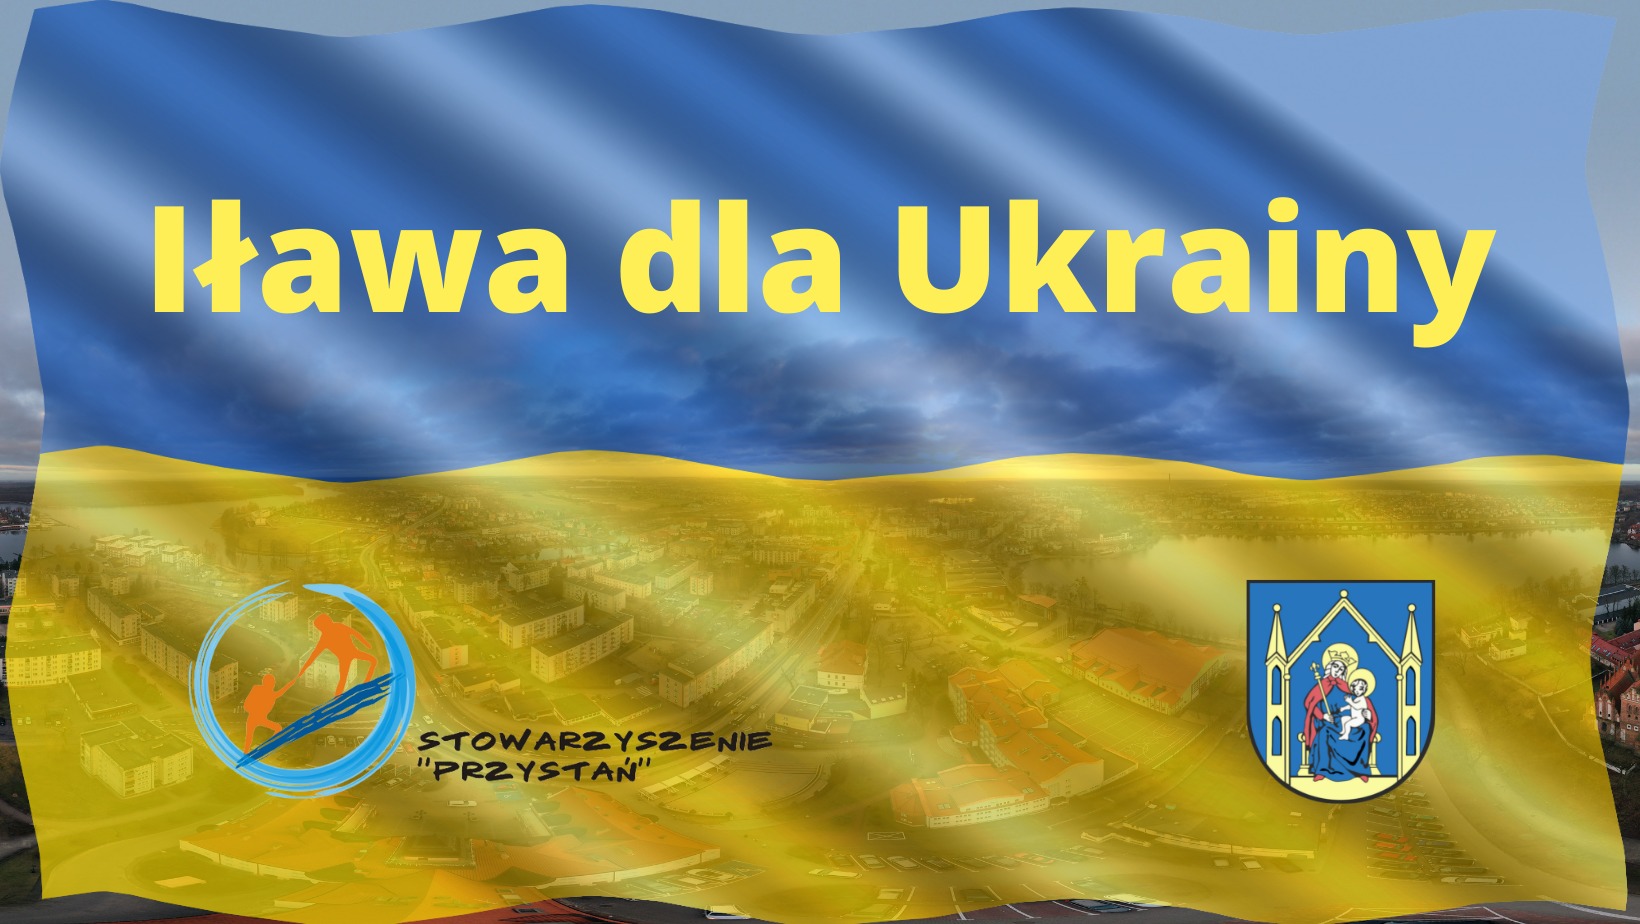 Zbiórka Iława dla Ukrainy